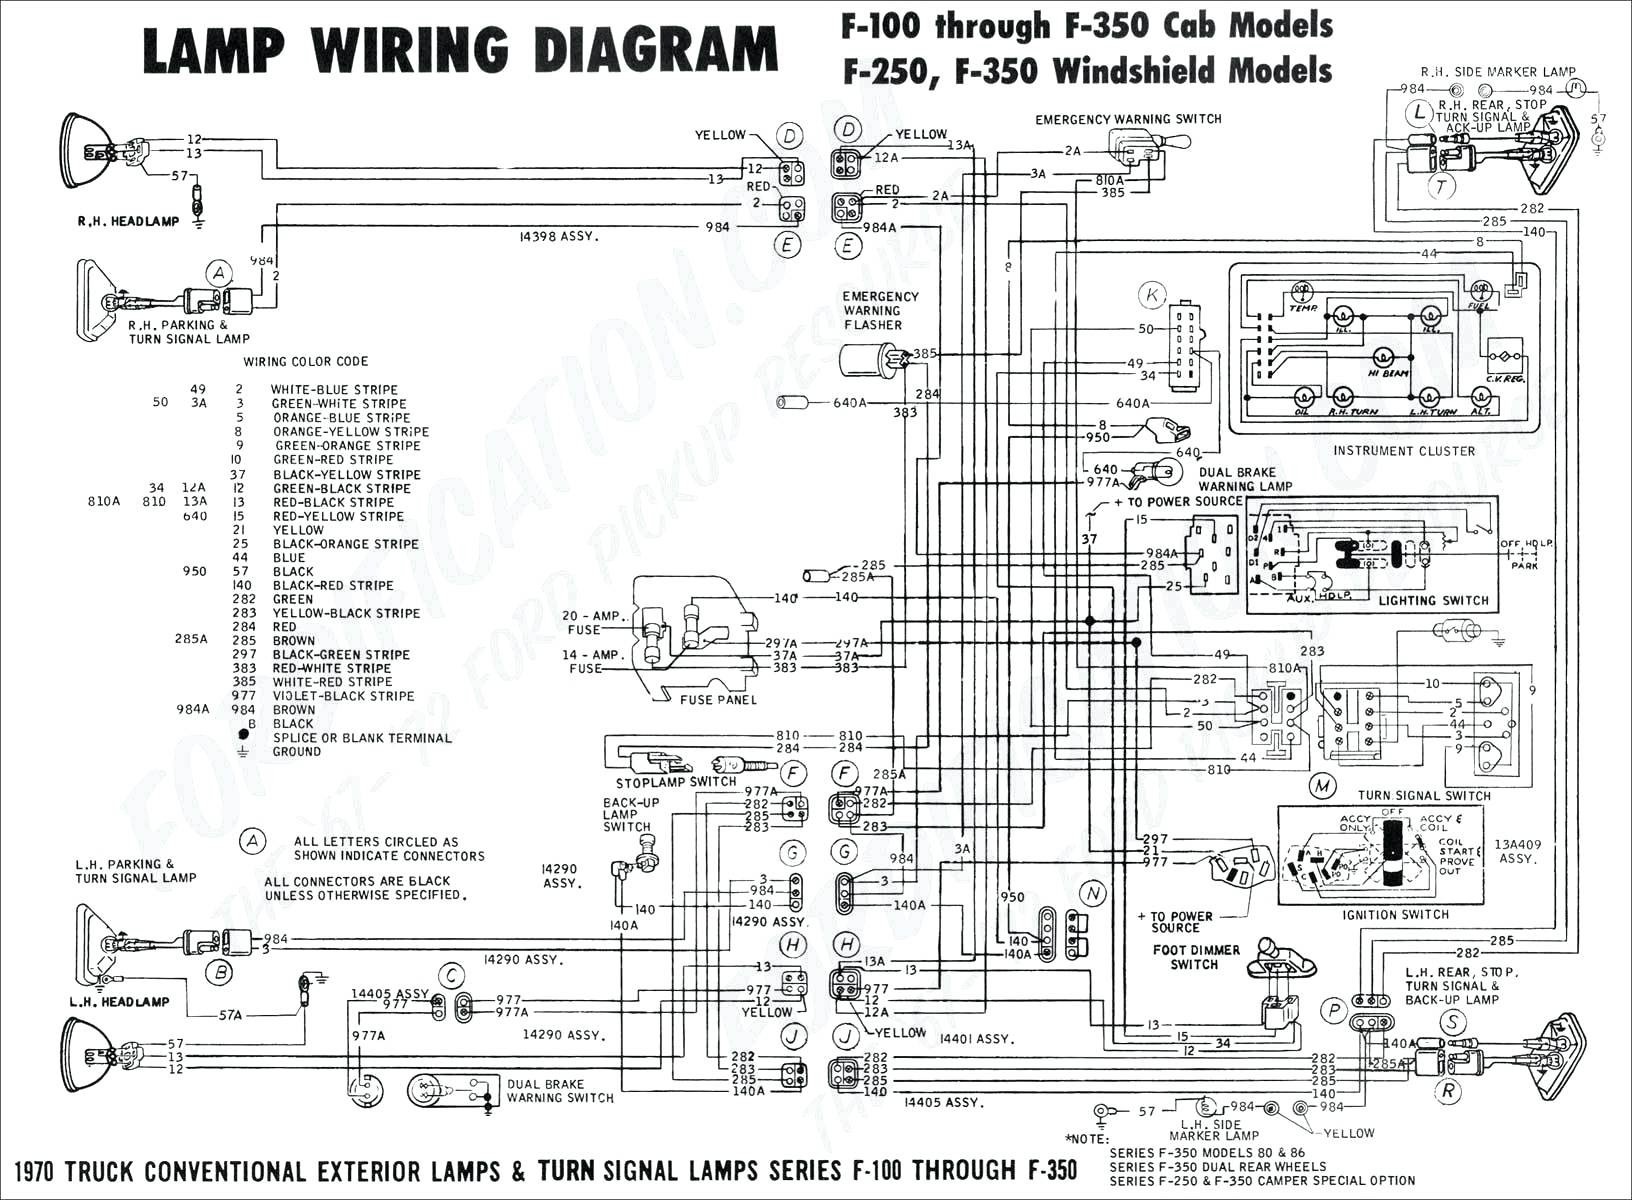 2002 Vw Beetle Engine Diagram Wiring Diagram 1976 Chrysler Cordoba Engine Partment Wiring Of 2002 Vw Beetle Engine Diagram